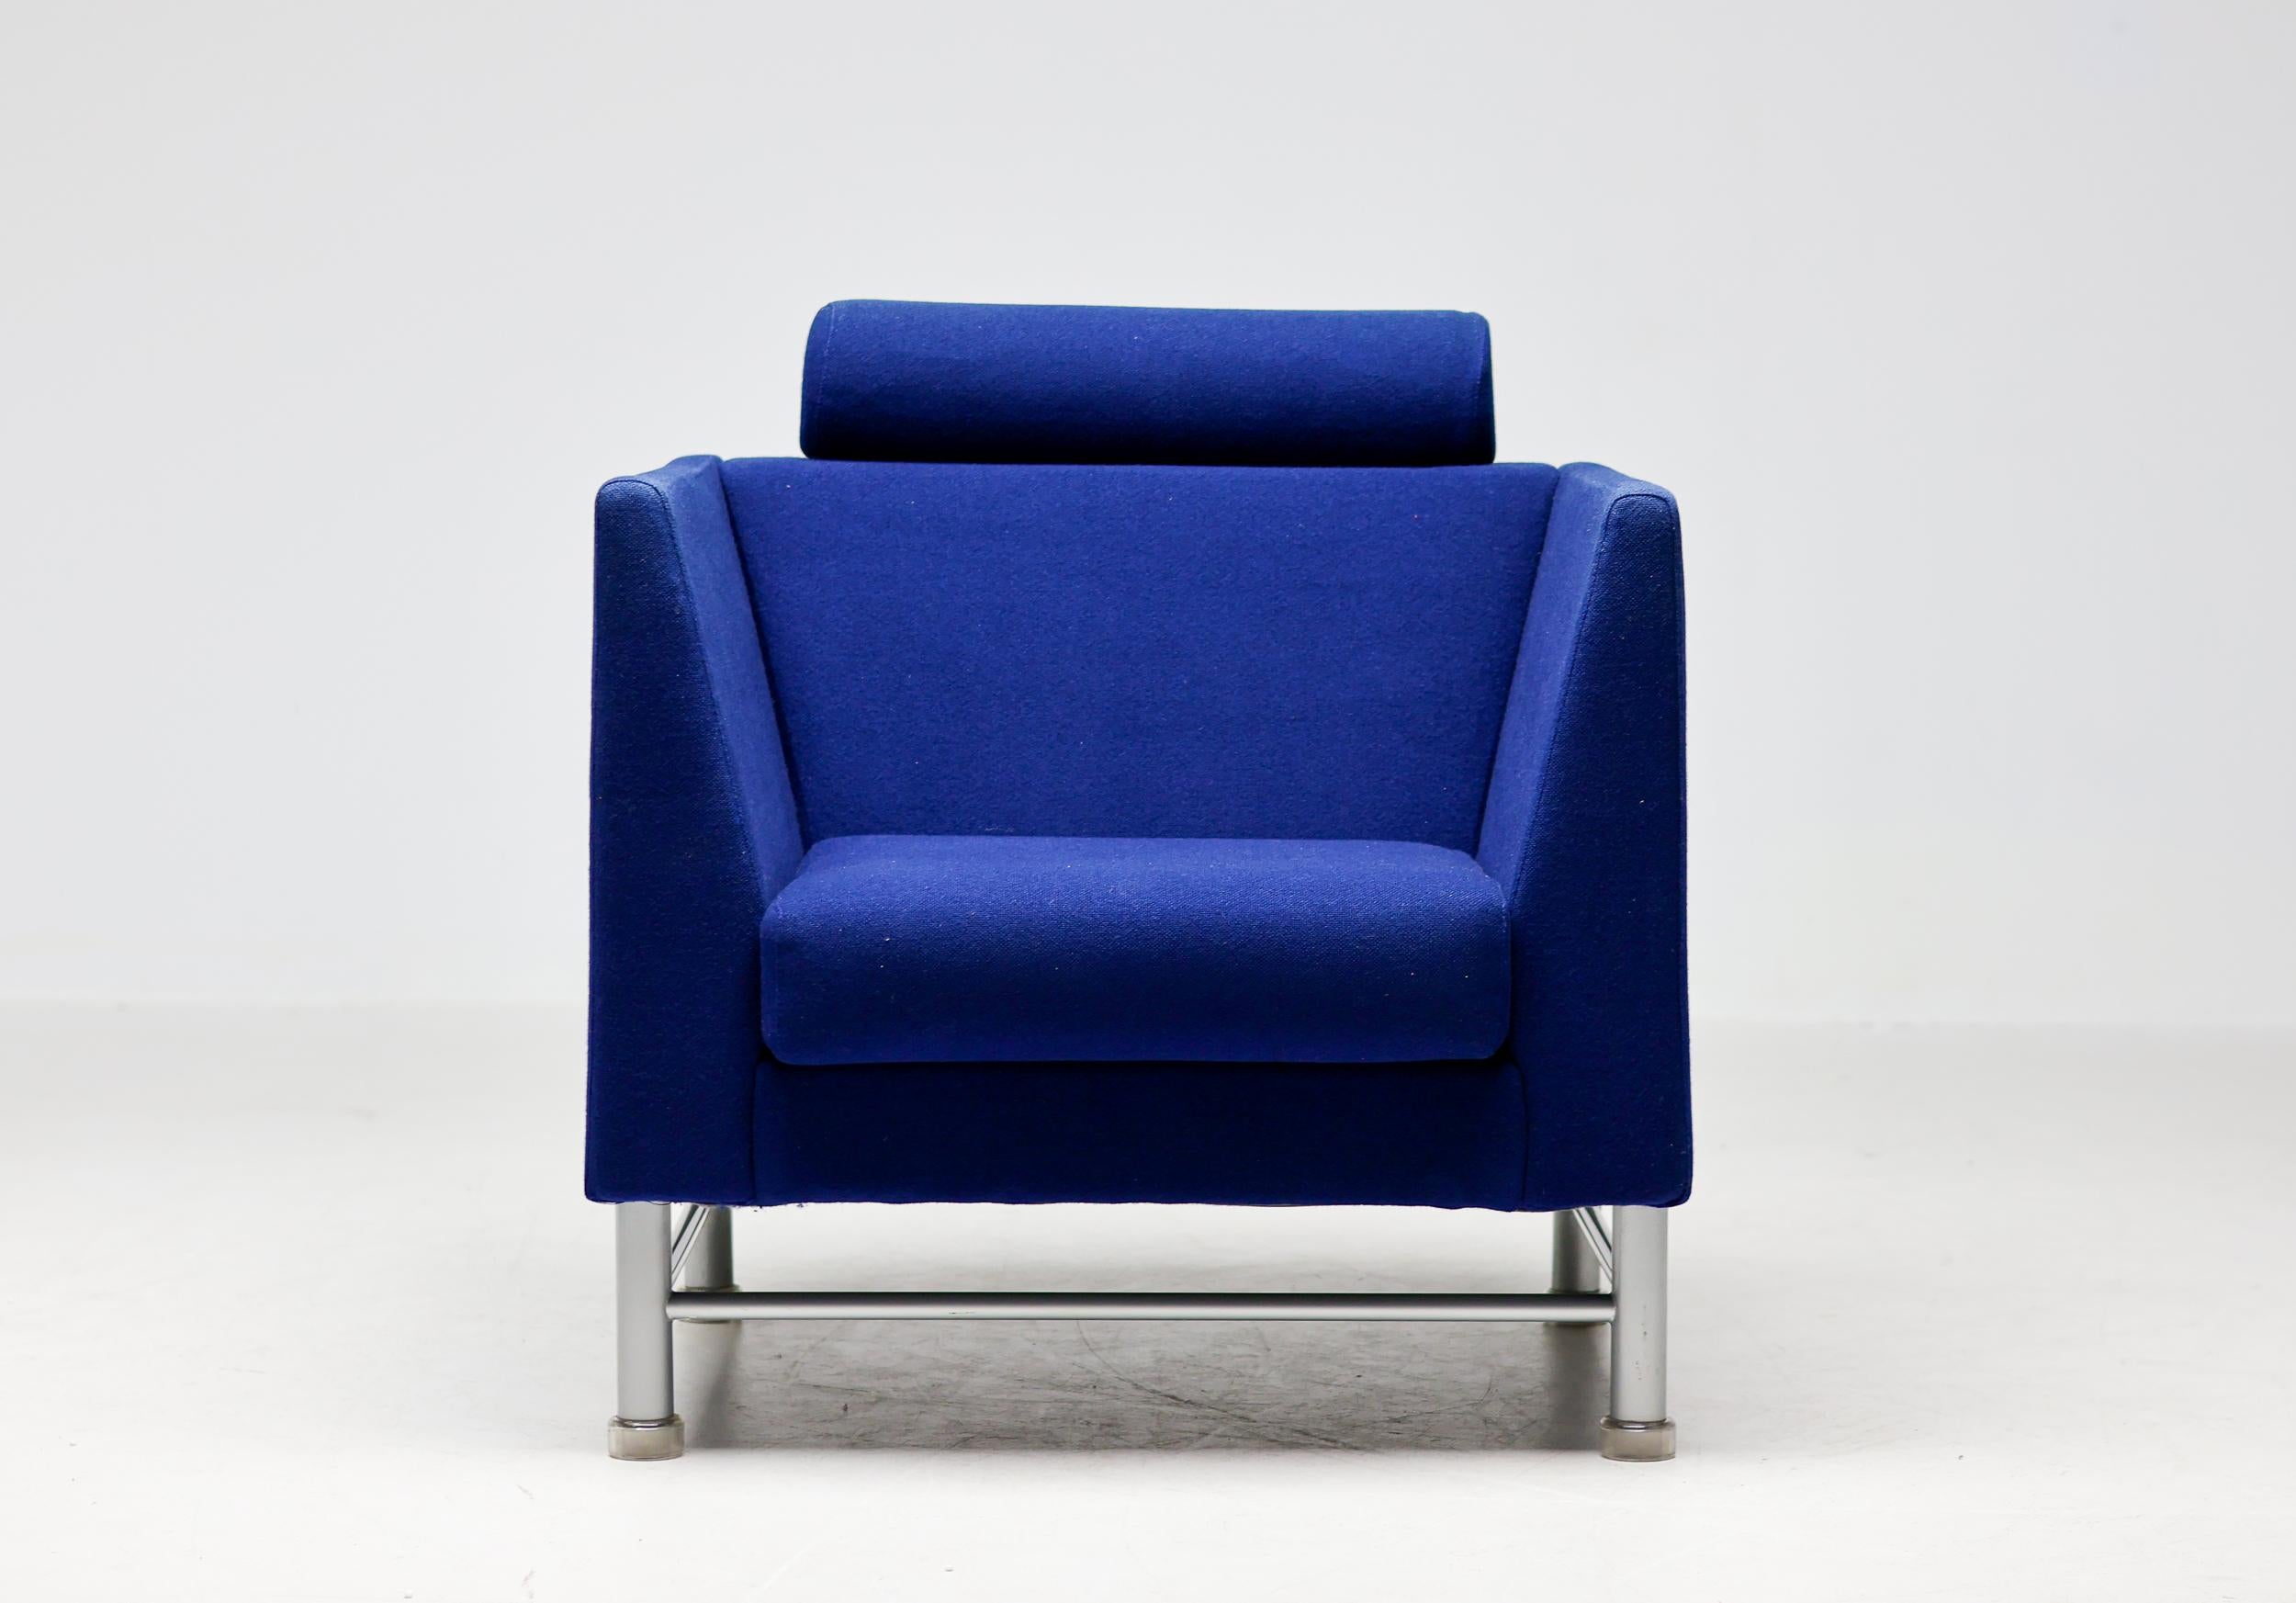 Der ikonische East Side Armlehnstuhl in Königsblau, entworfen von Ettore Sottsass für Knoll International im Jahr 1983.
Postmoderner Stuhl mit Originalpolsterung in wunderschönem Vintage-Zustand.
Der Stuhl hat ein grau emailliertes Stahlgestell mit